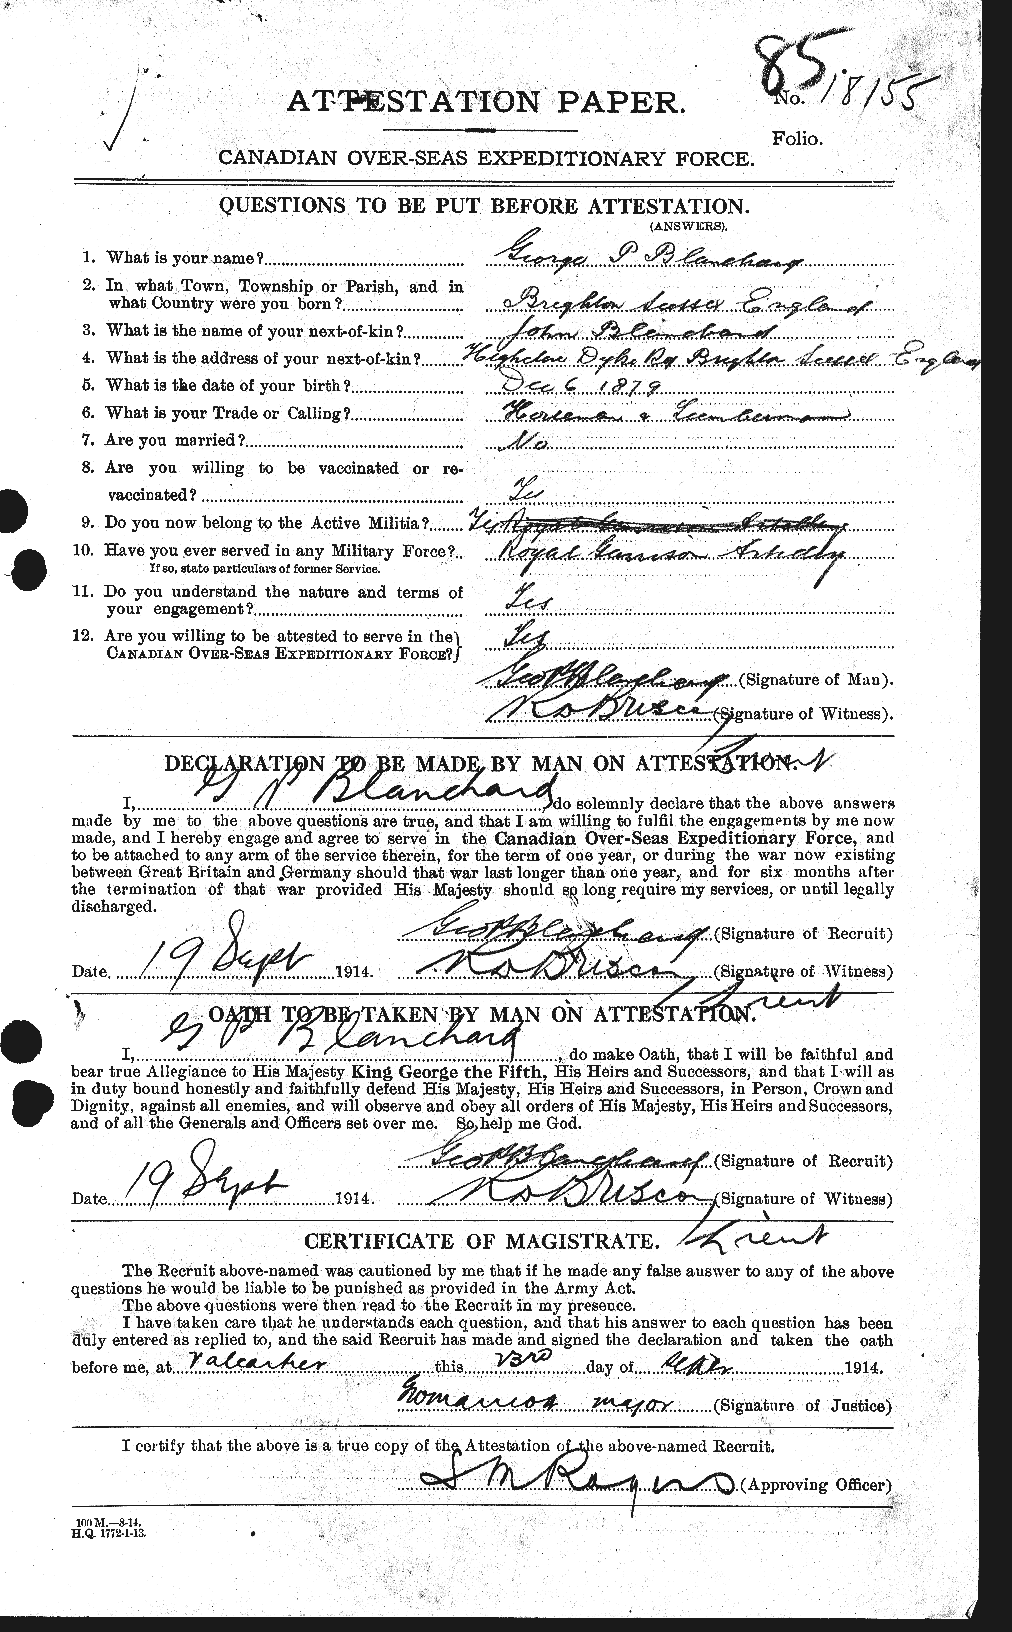 Dossiers du Personnel de la Première Guerre mondiale - CEC 240393a